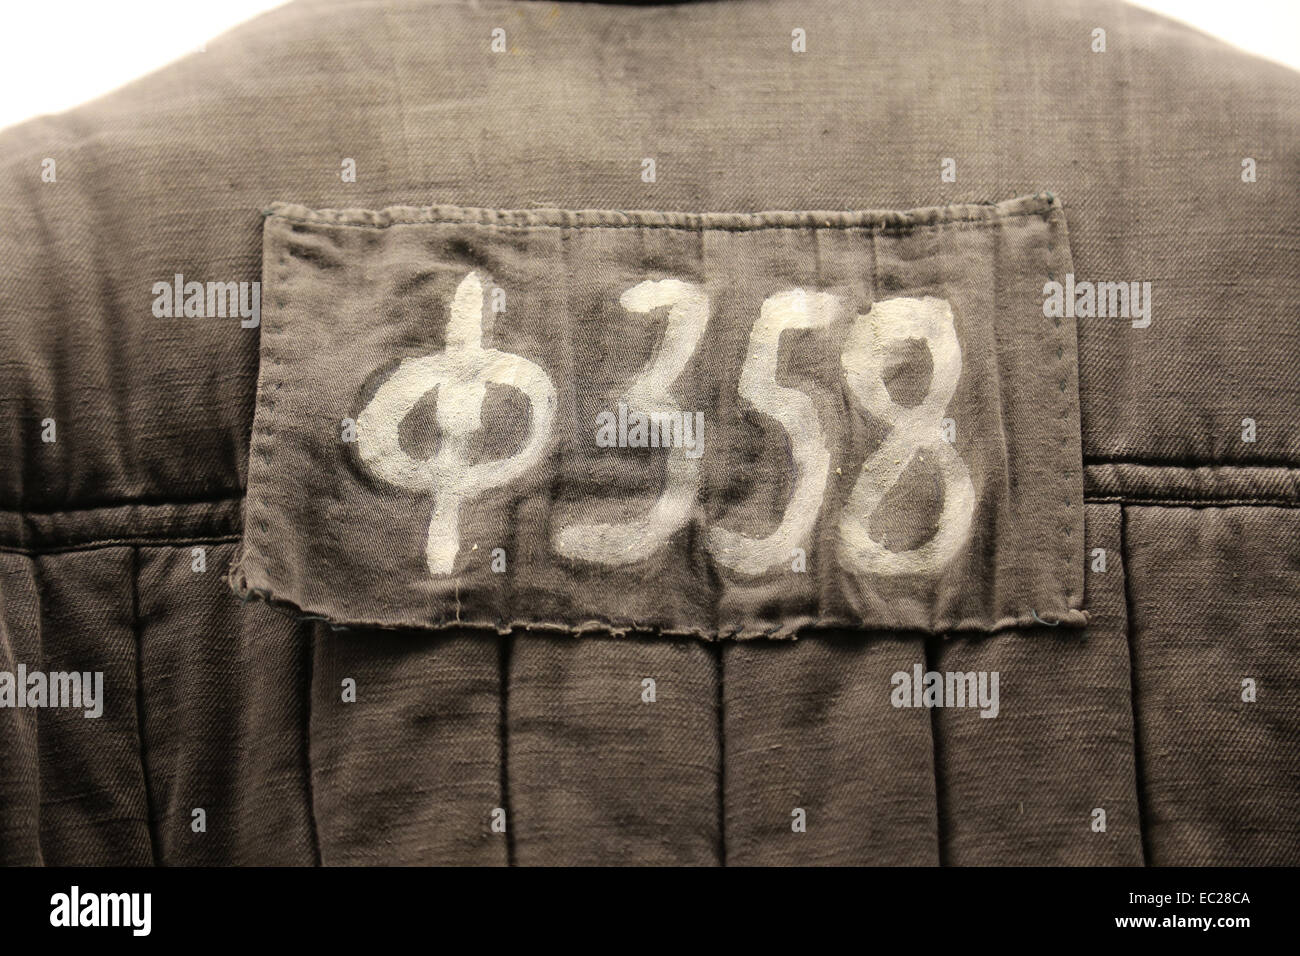 Gulag, zwang die sowjetische Arbeitslager. Gefangenen Jacke, hatte jeder Deportierten eine ID-Nummer zugewiesen werden. Lettland. Stockfoto